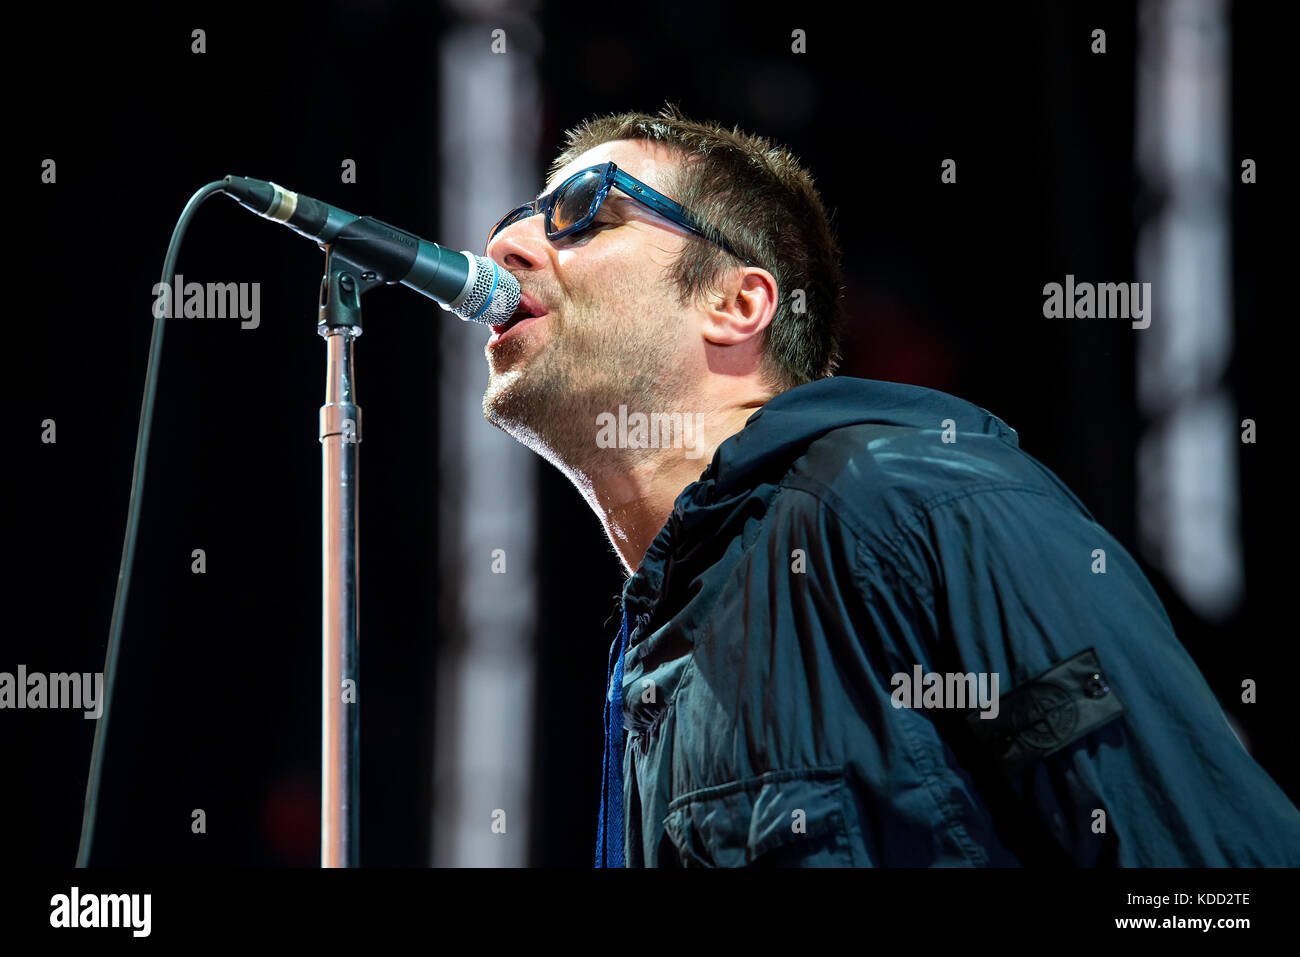 Benicassim, Espagne - 15 jul : Liam Gallagher (musicien) se produit en concert au festival le 15 juillet 2017 à benicassim, espagne. Banque D'Images